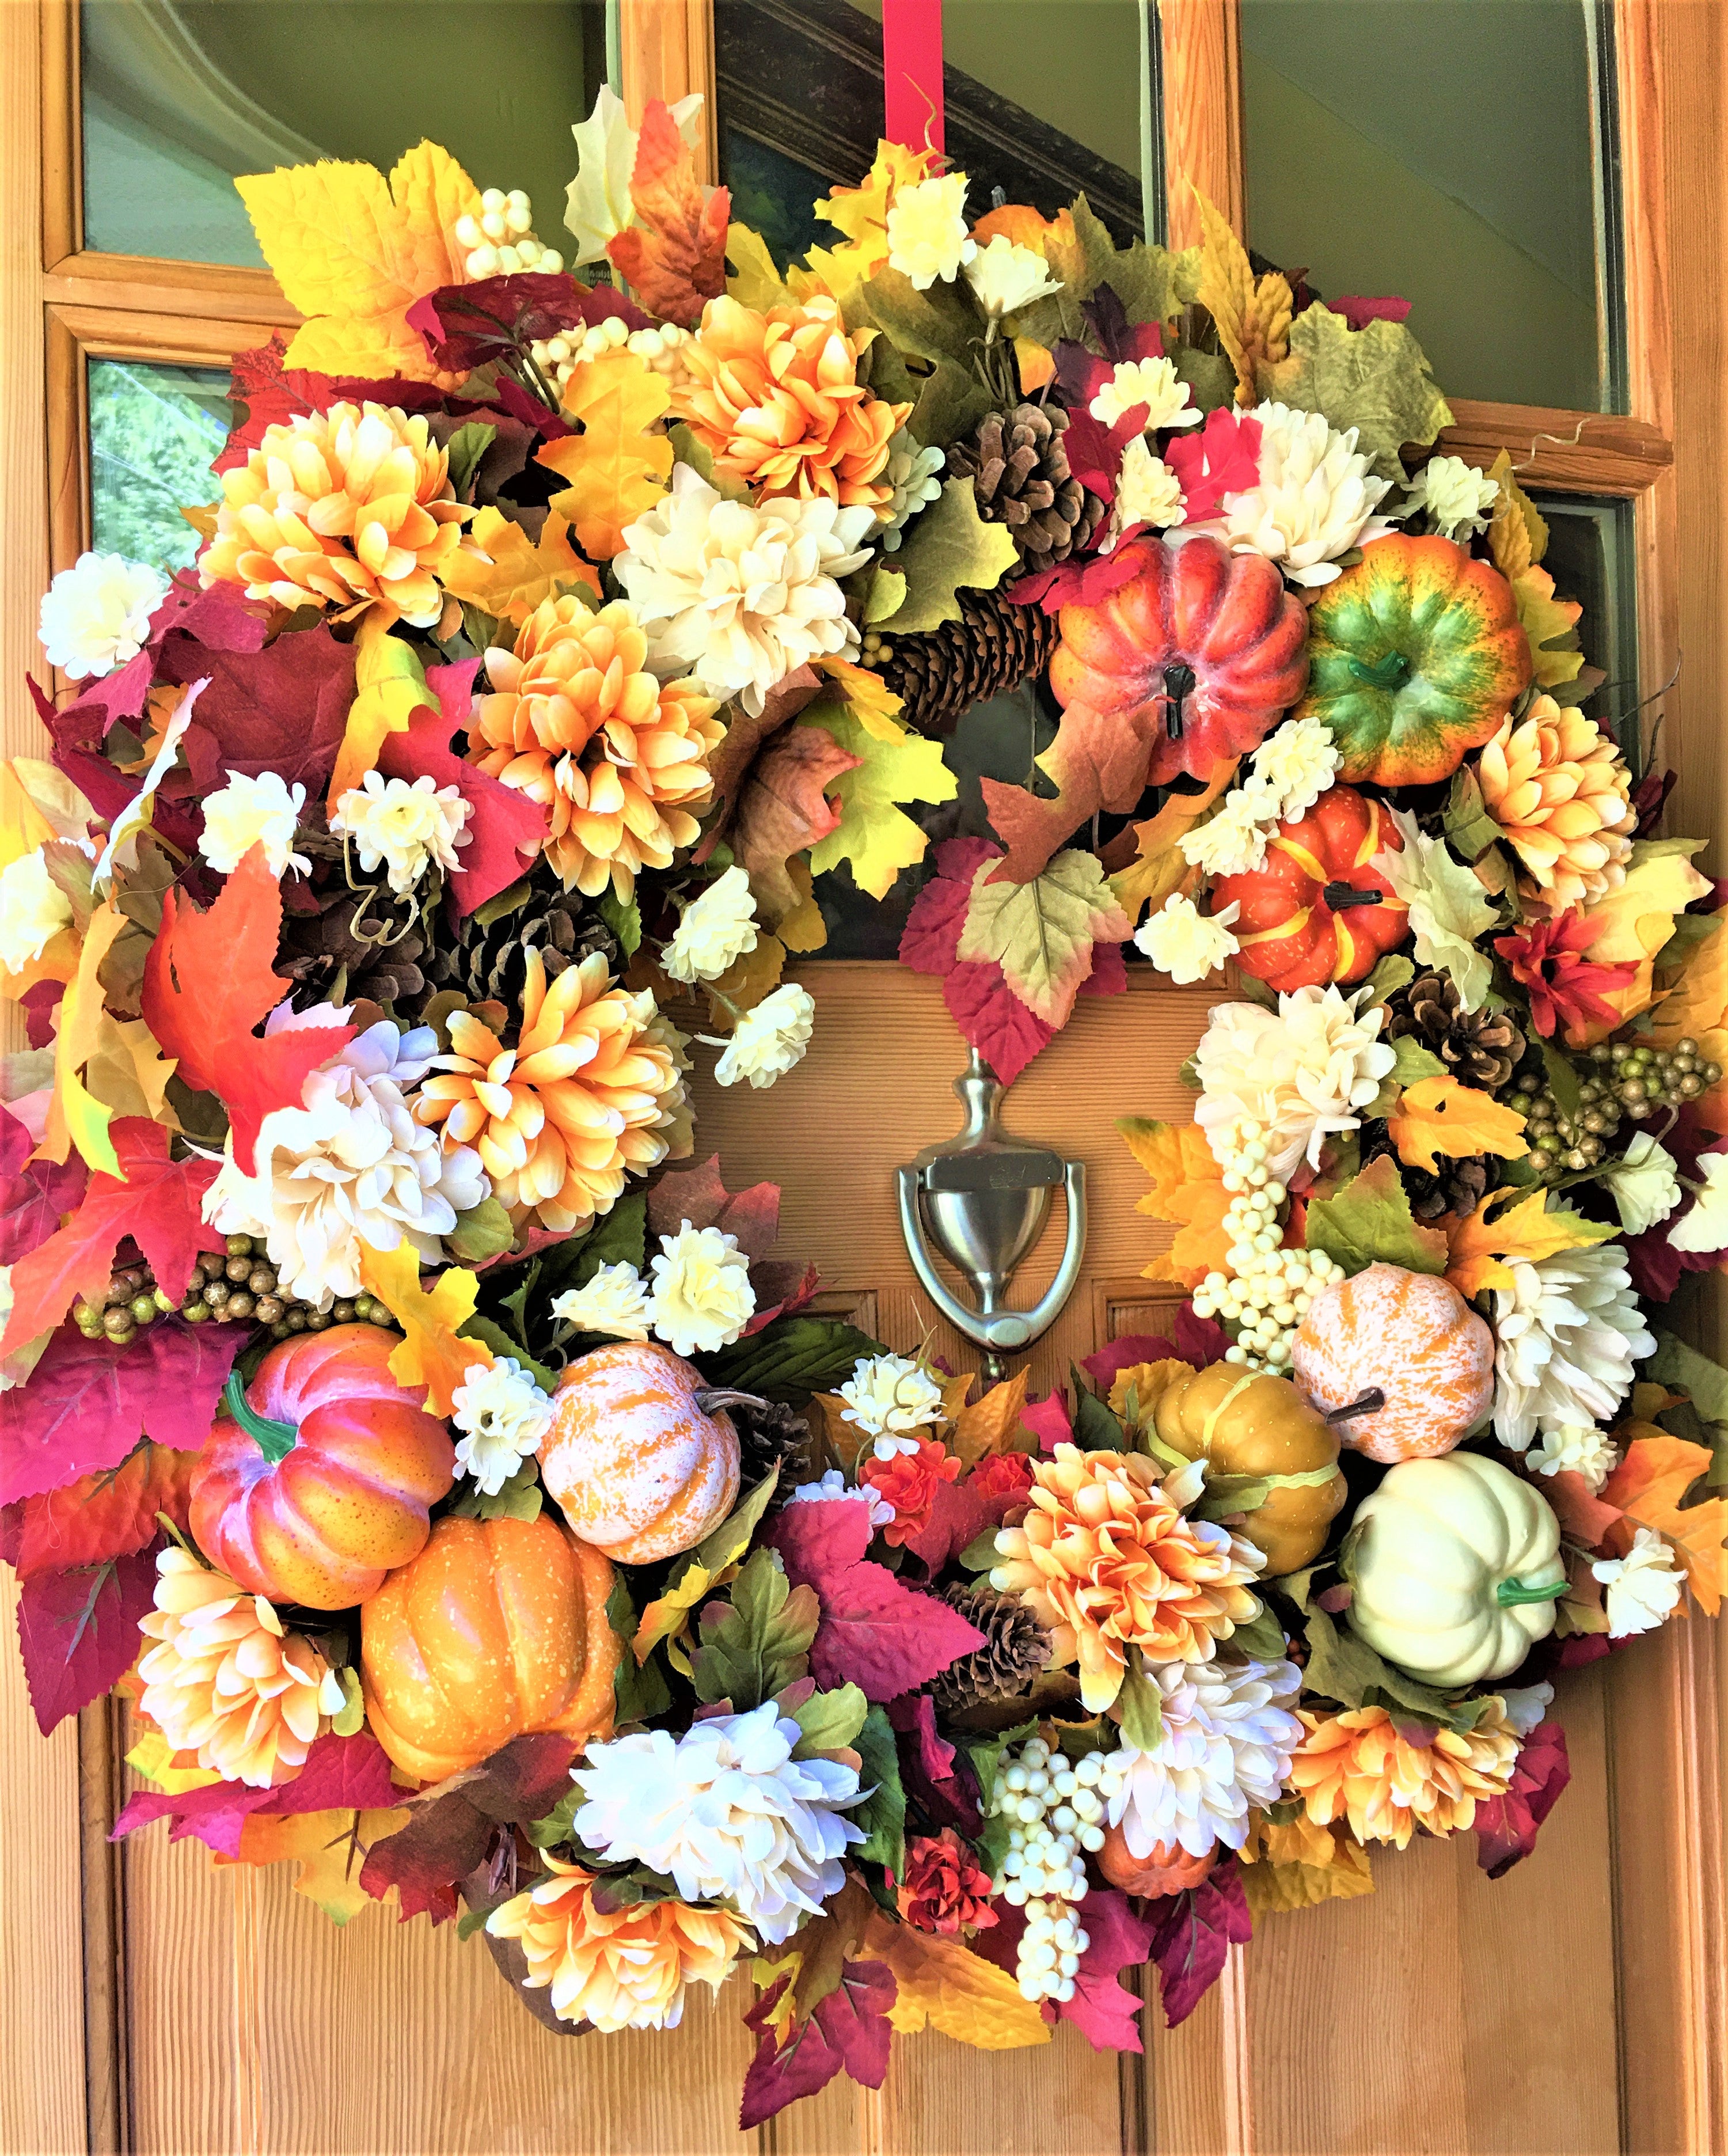 Autumn Floral & Gourd Wreath 30"